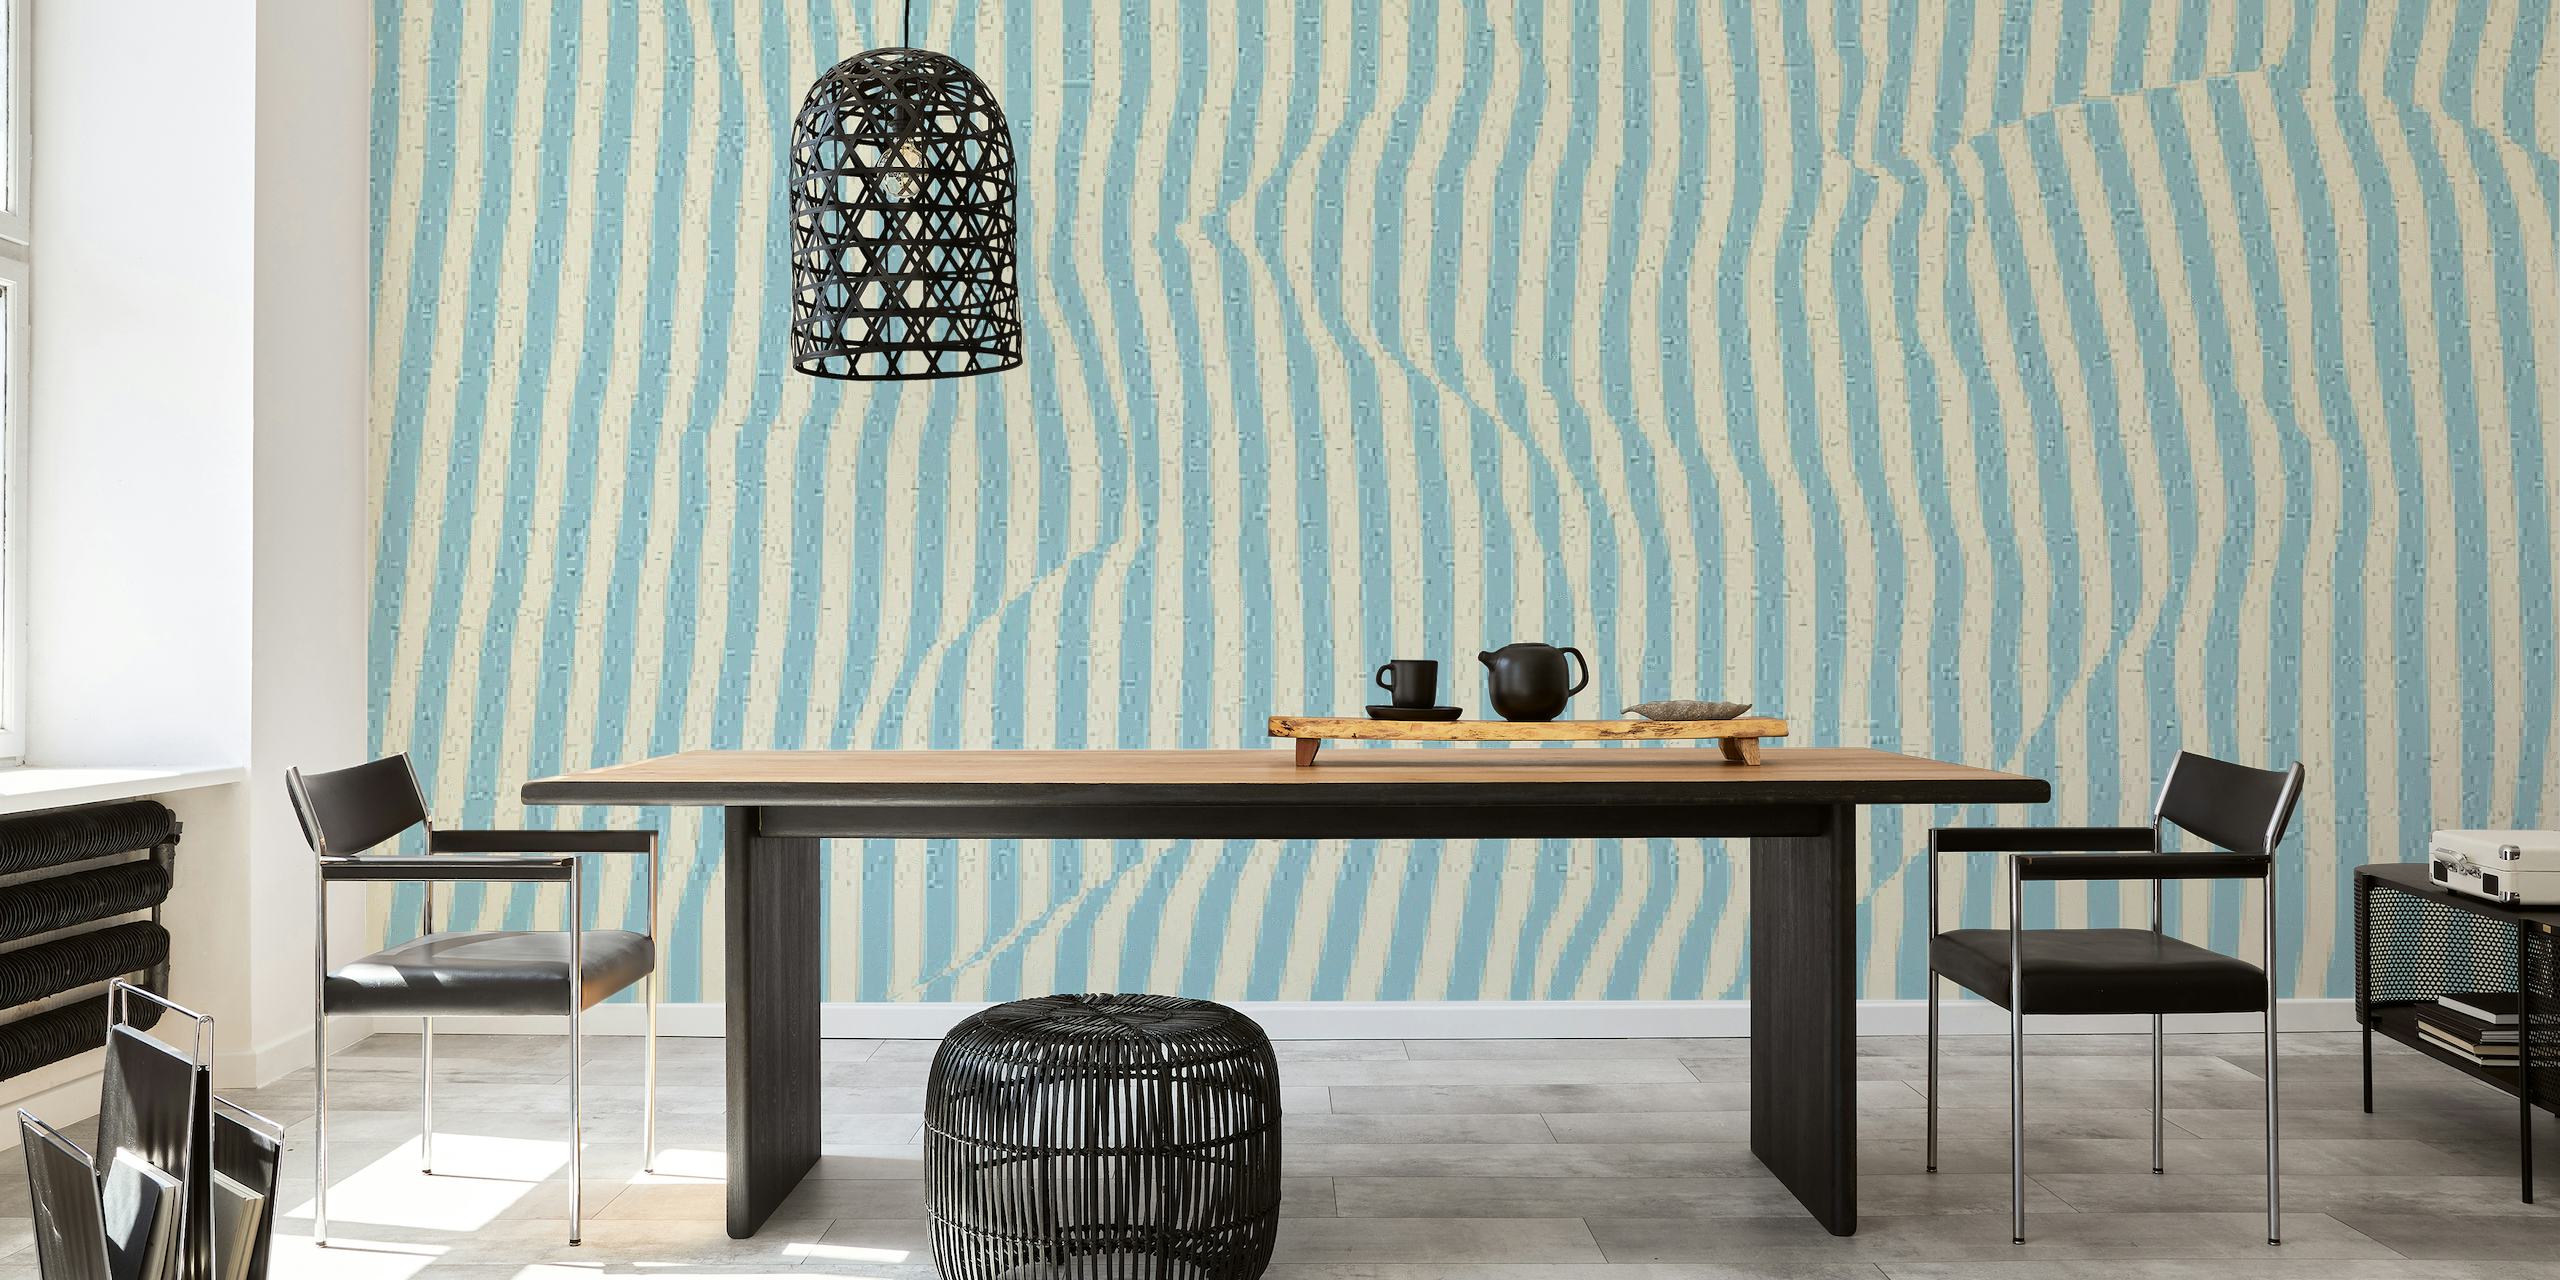 Mural de parede abstrato com listras azuis dando um efeito calmante